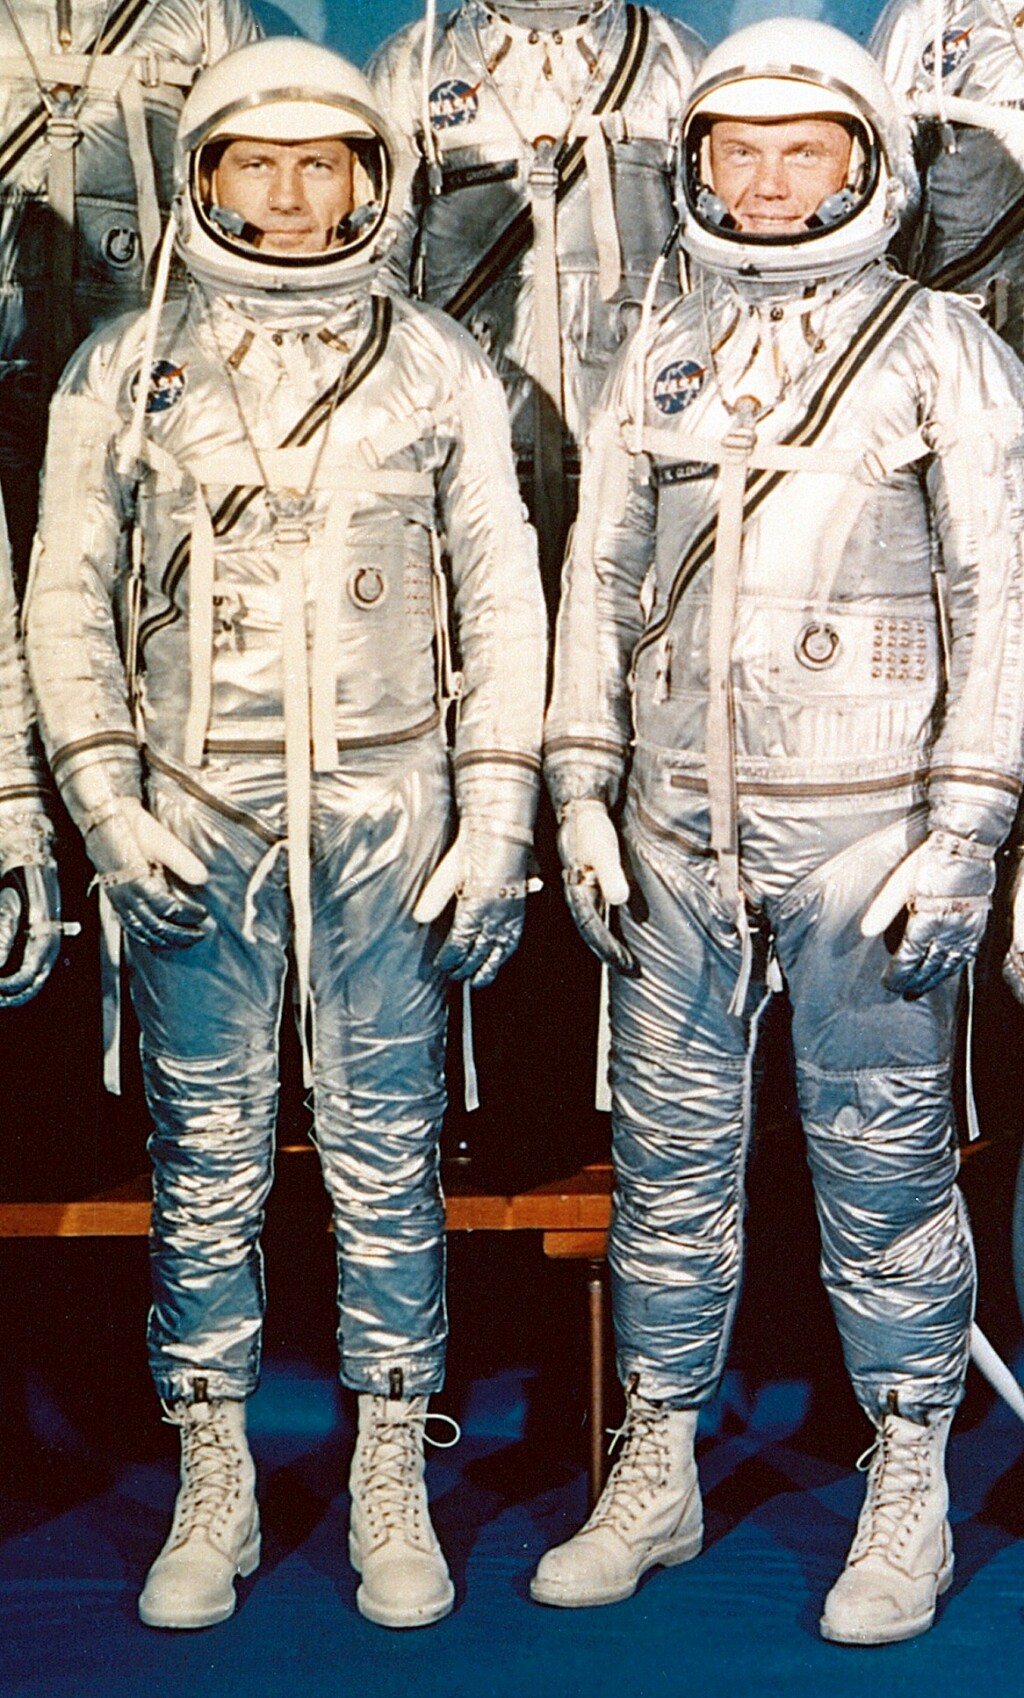 Astronauti iz svemirskog programa Mercury 1960. godine u čizmicama na vezanje